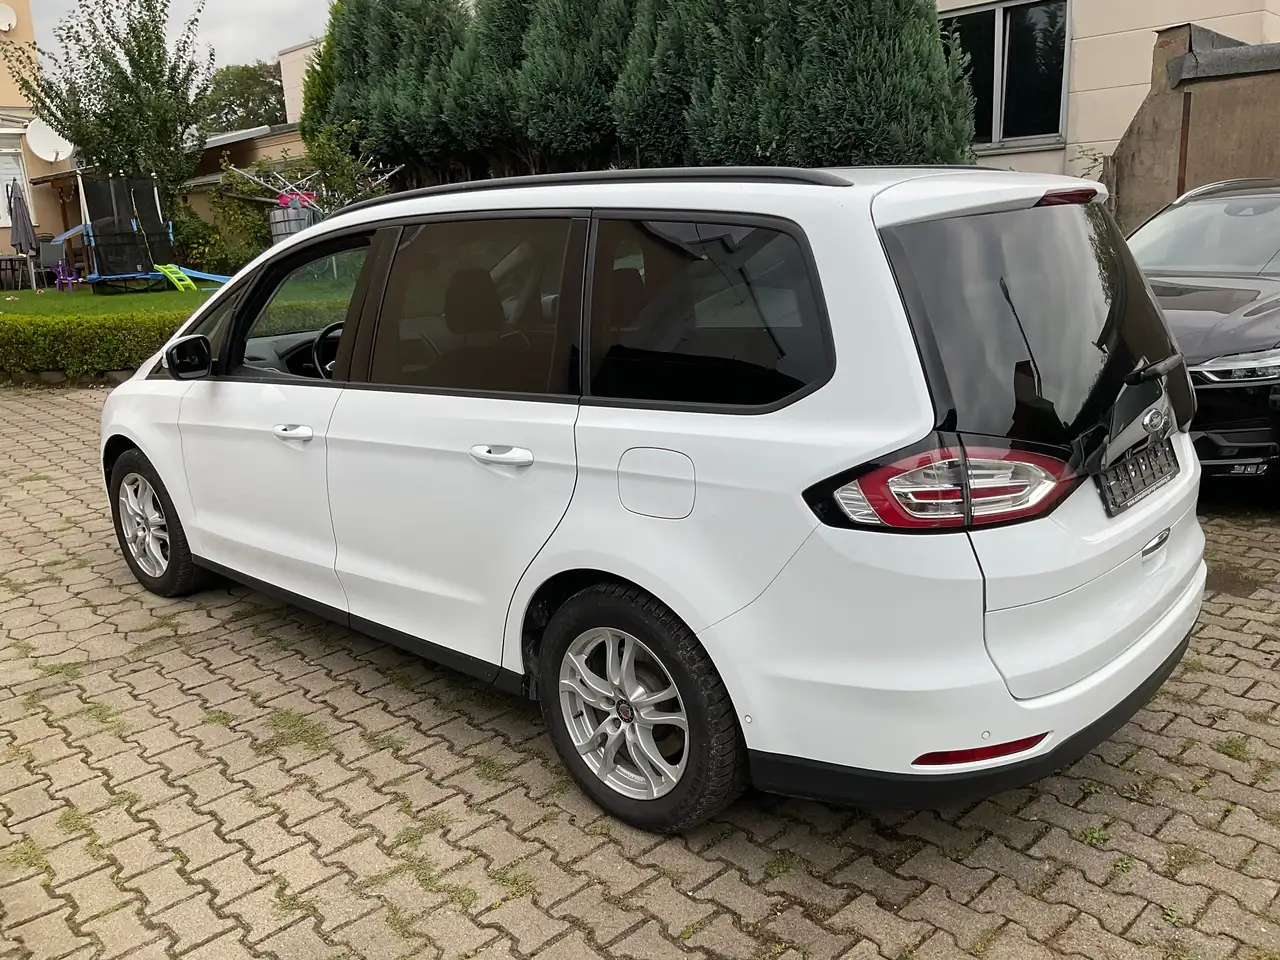 Ford Galaxy Van/Kleinbus in Weiß gebraucht in Rheinfelden für